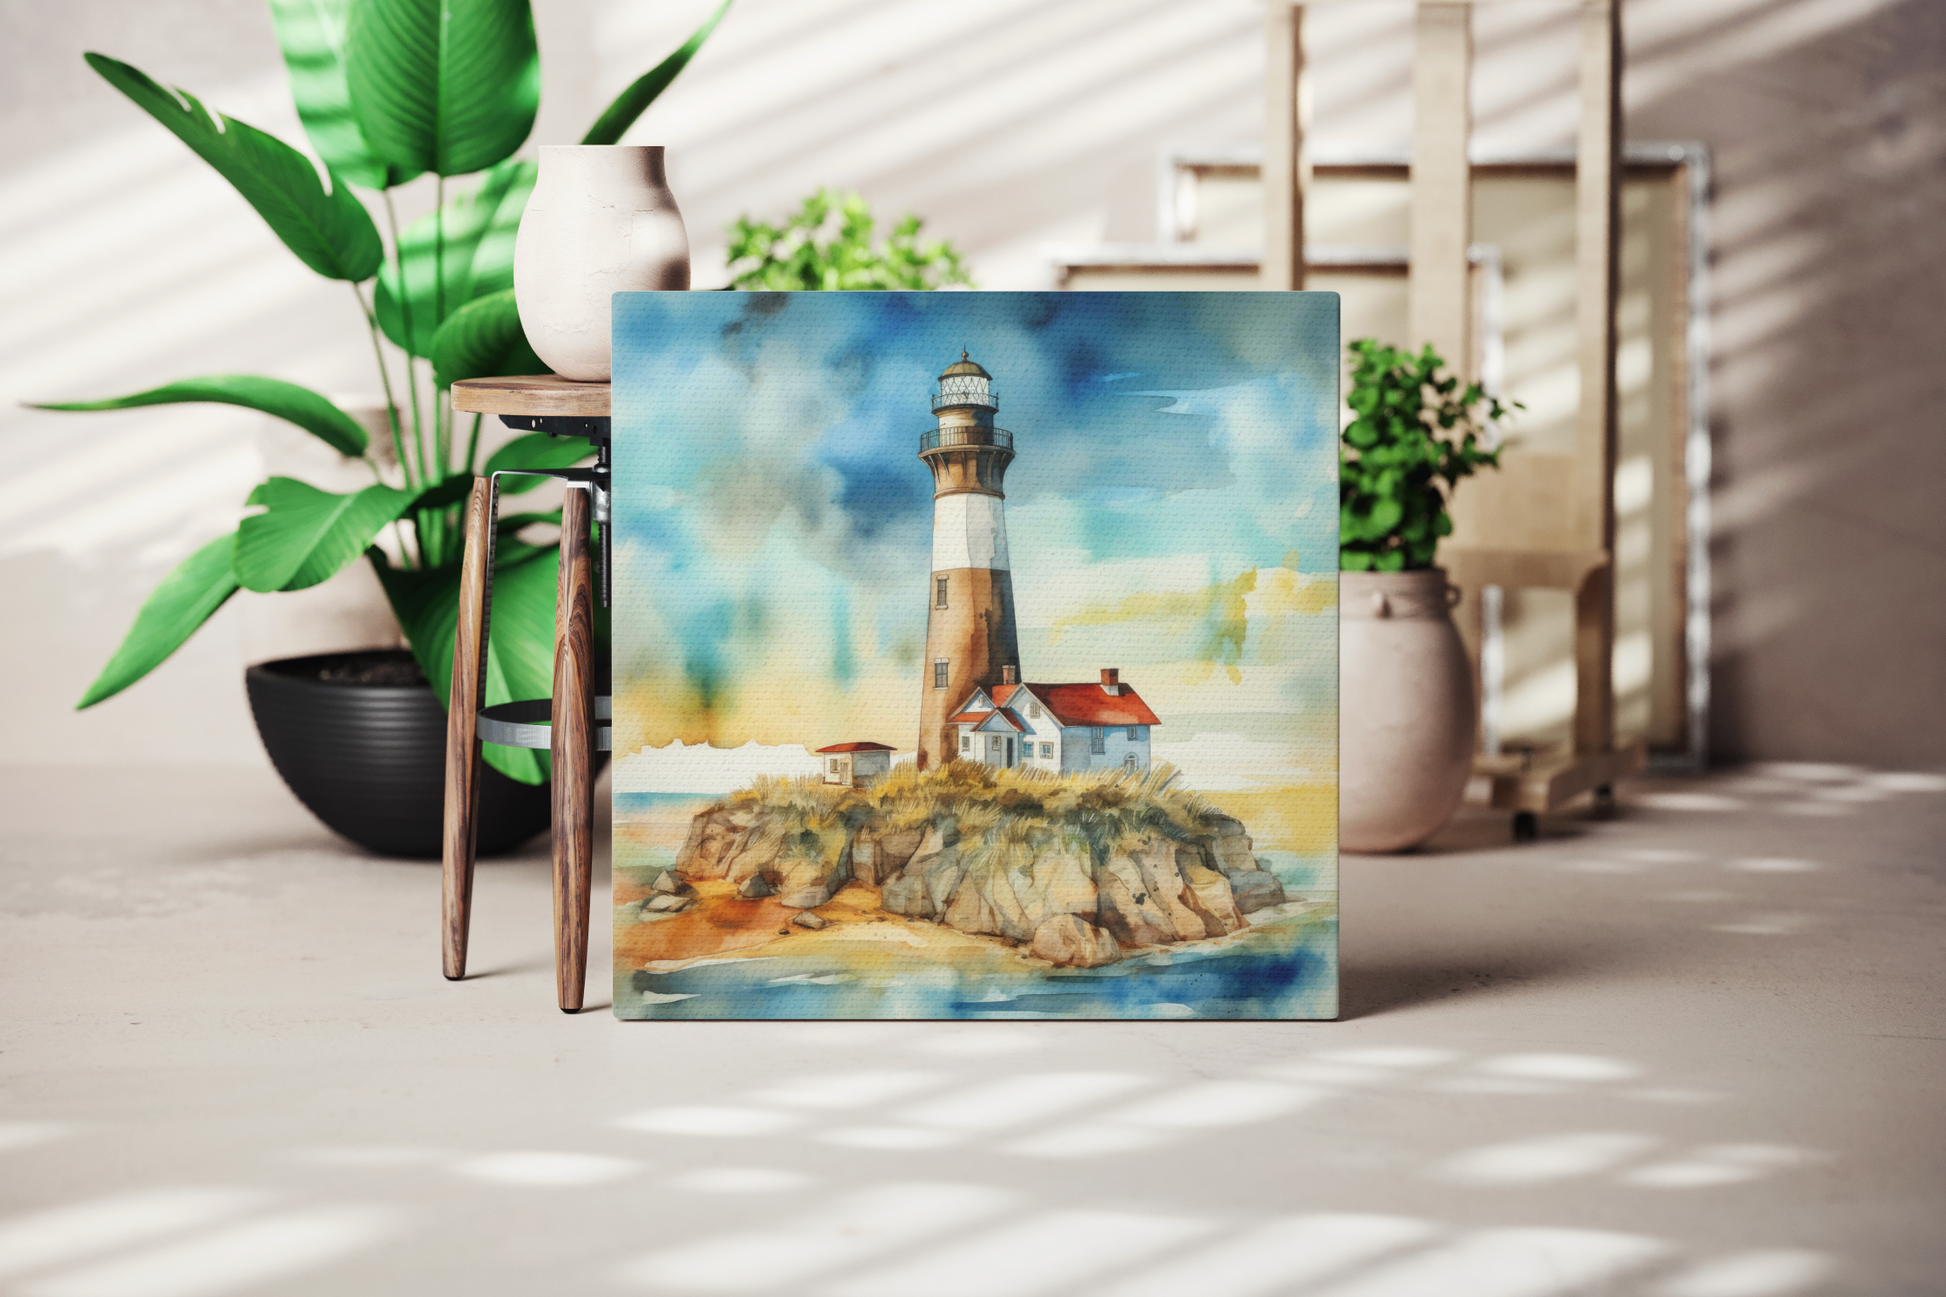 lighthouse canvas wall decor, lighthouse theme wall art for nautical theme room, coastal lighthouse canvas art print